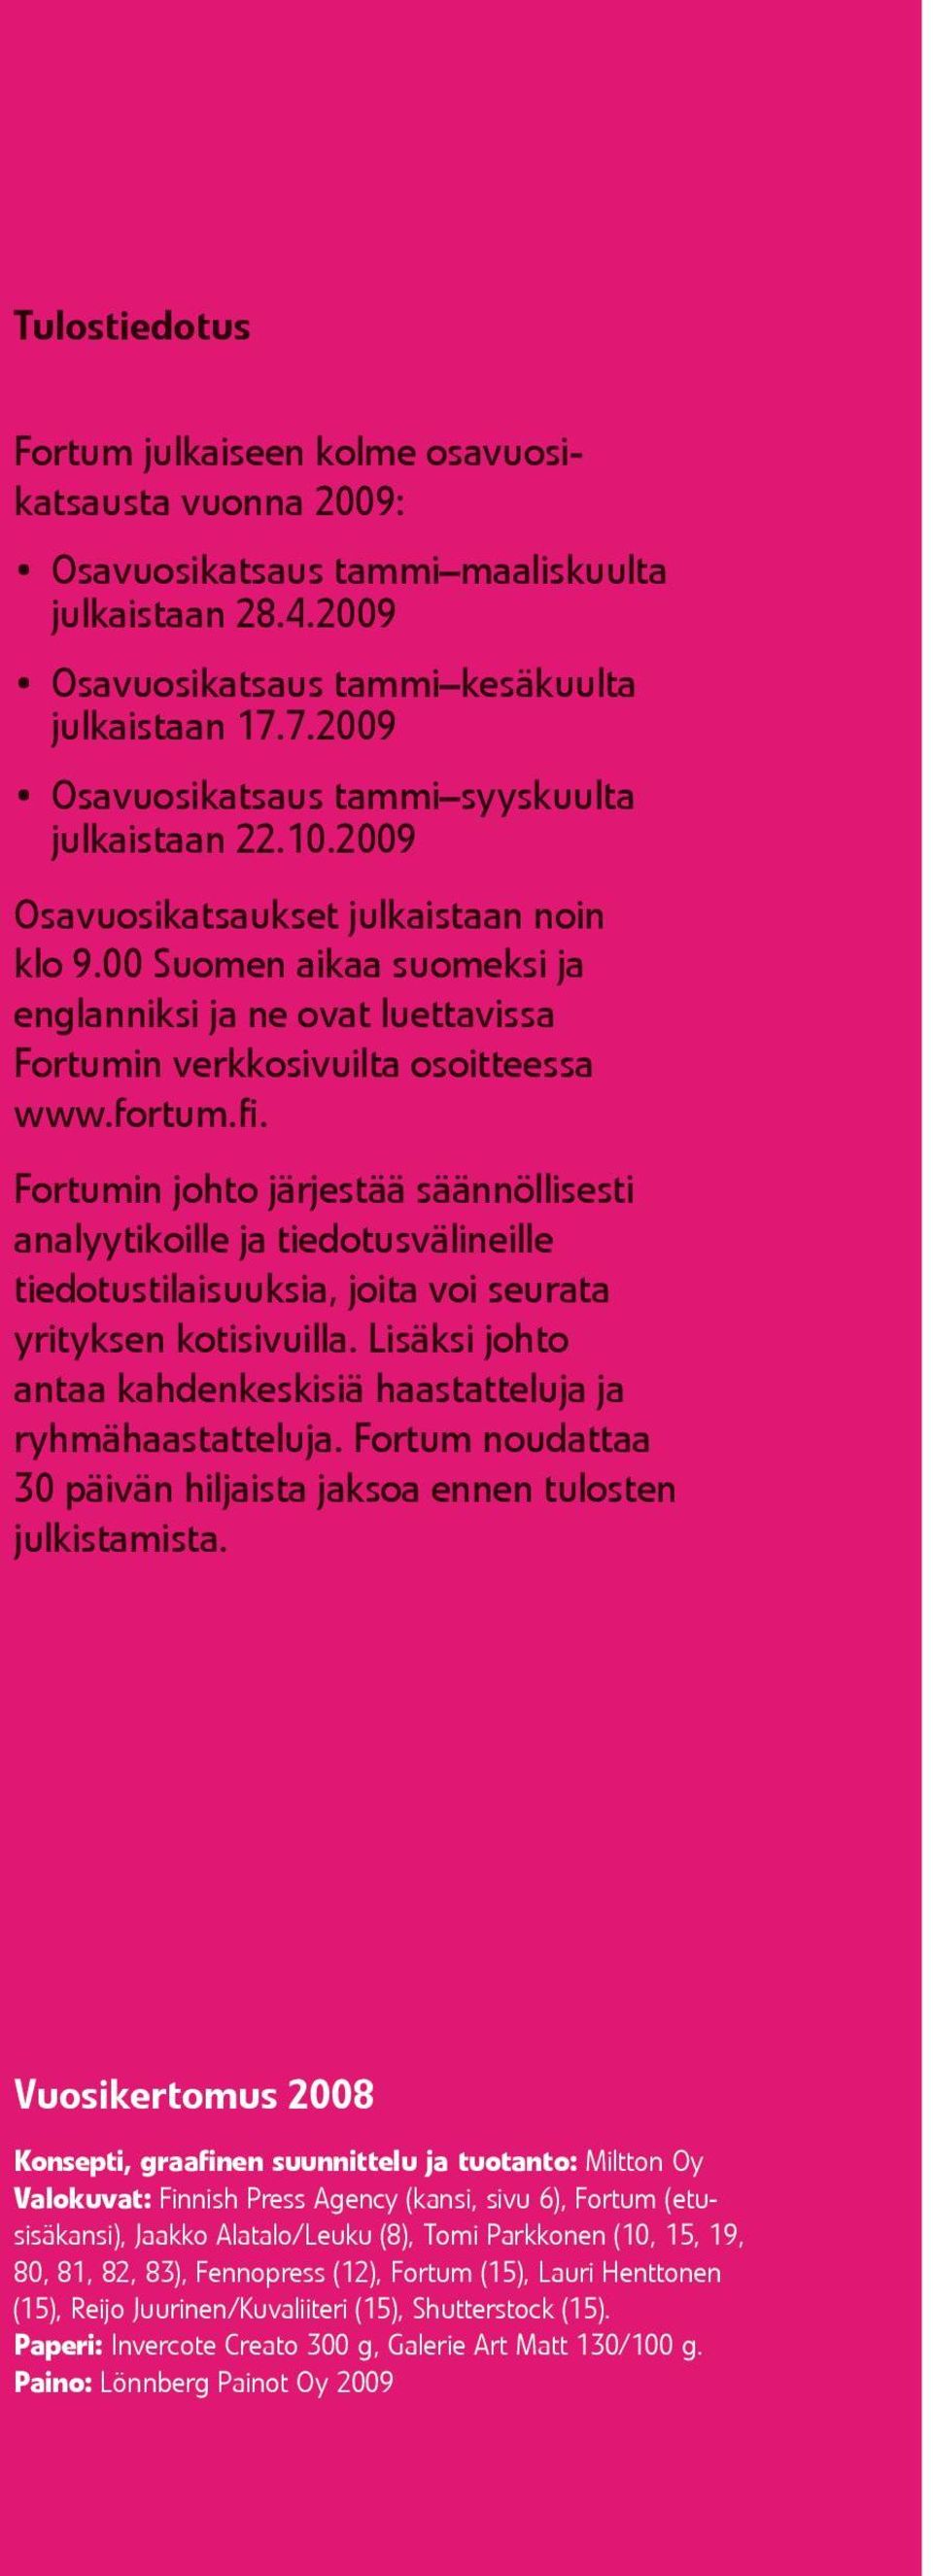 00 Suomen aikaa suomeksi ja englanniksi ja ne ovat luettavissa Fortumin verkkosivuilta osoitteessa www.fortum.fi.